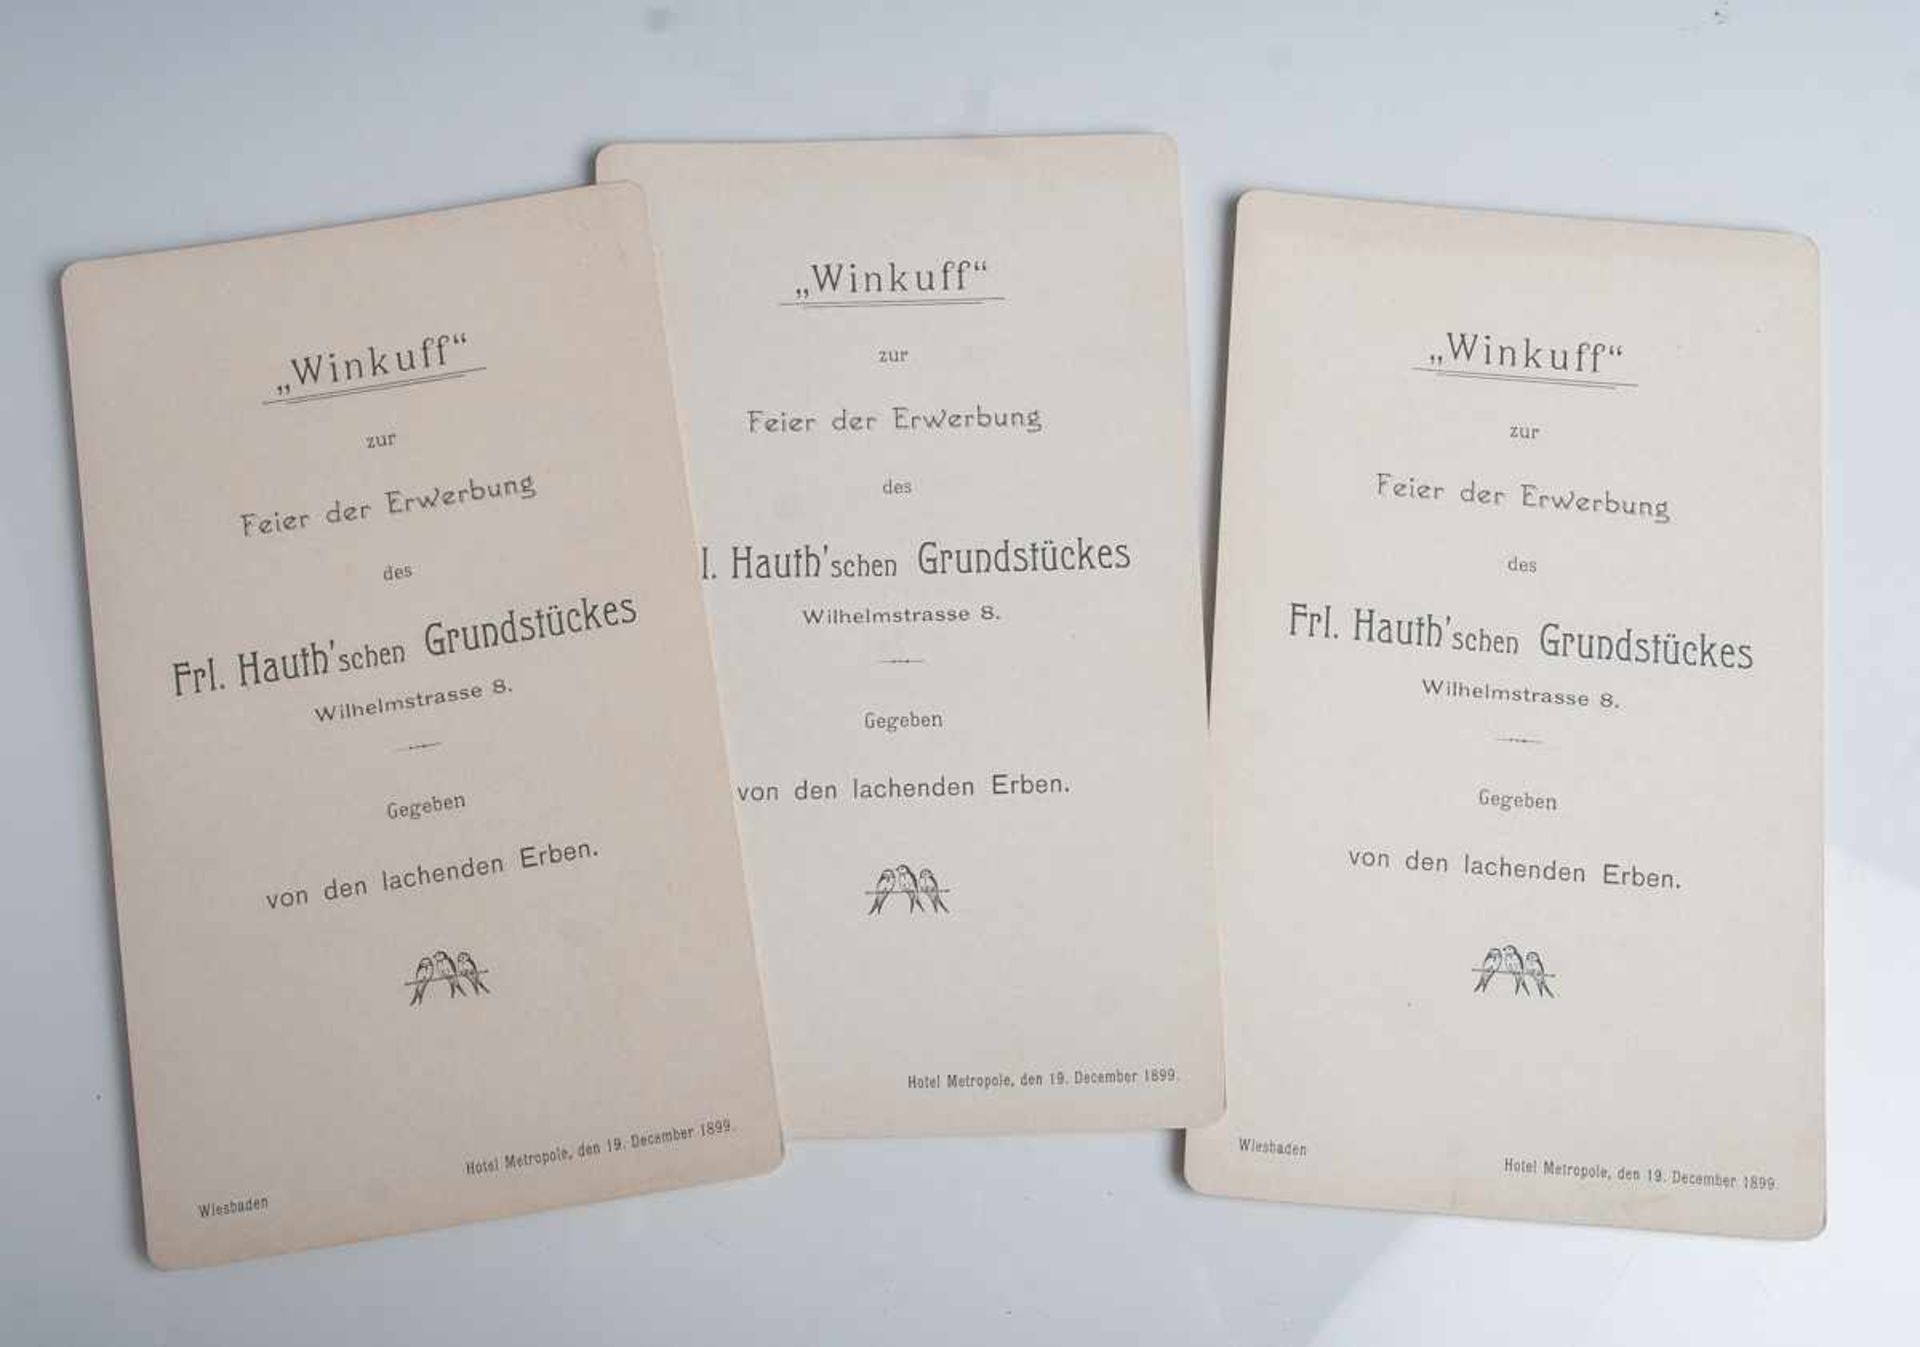 3 Menükarten (1899), Wiesbaden, Hotel Metropole, "Winkuff" Feier zur Erwerbung des Frl.Hauth'schen